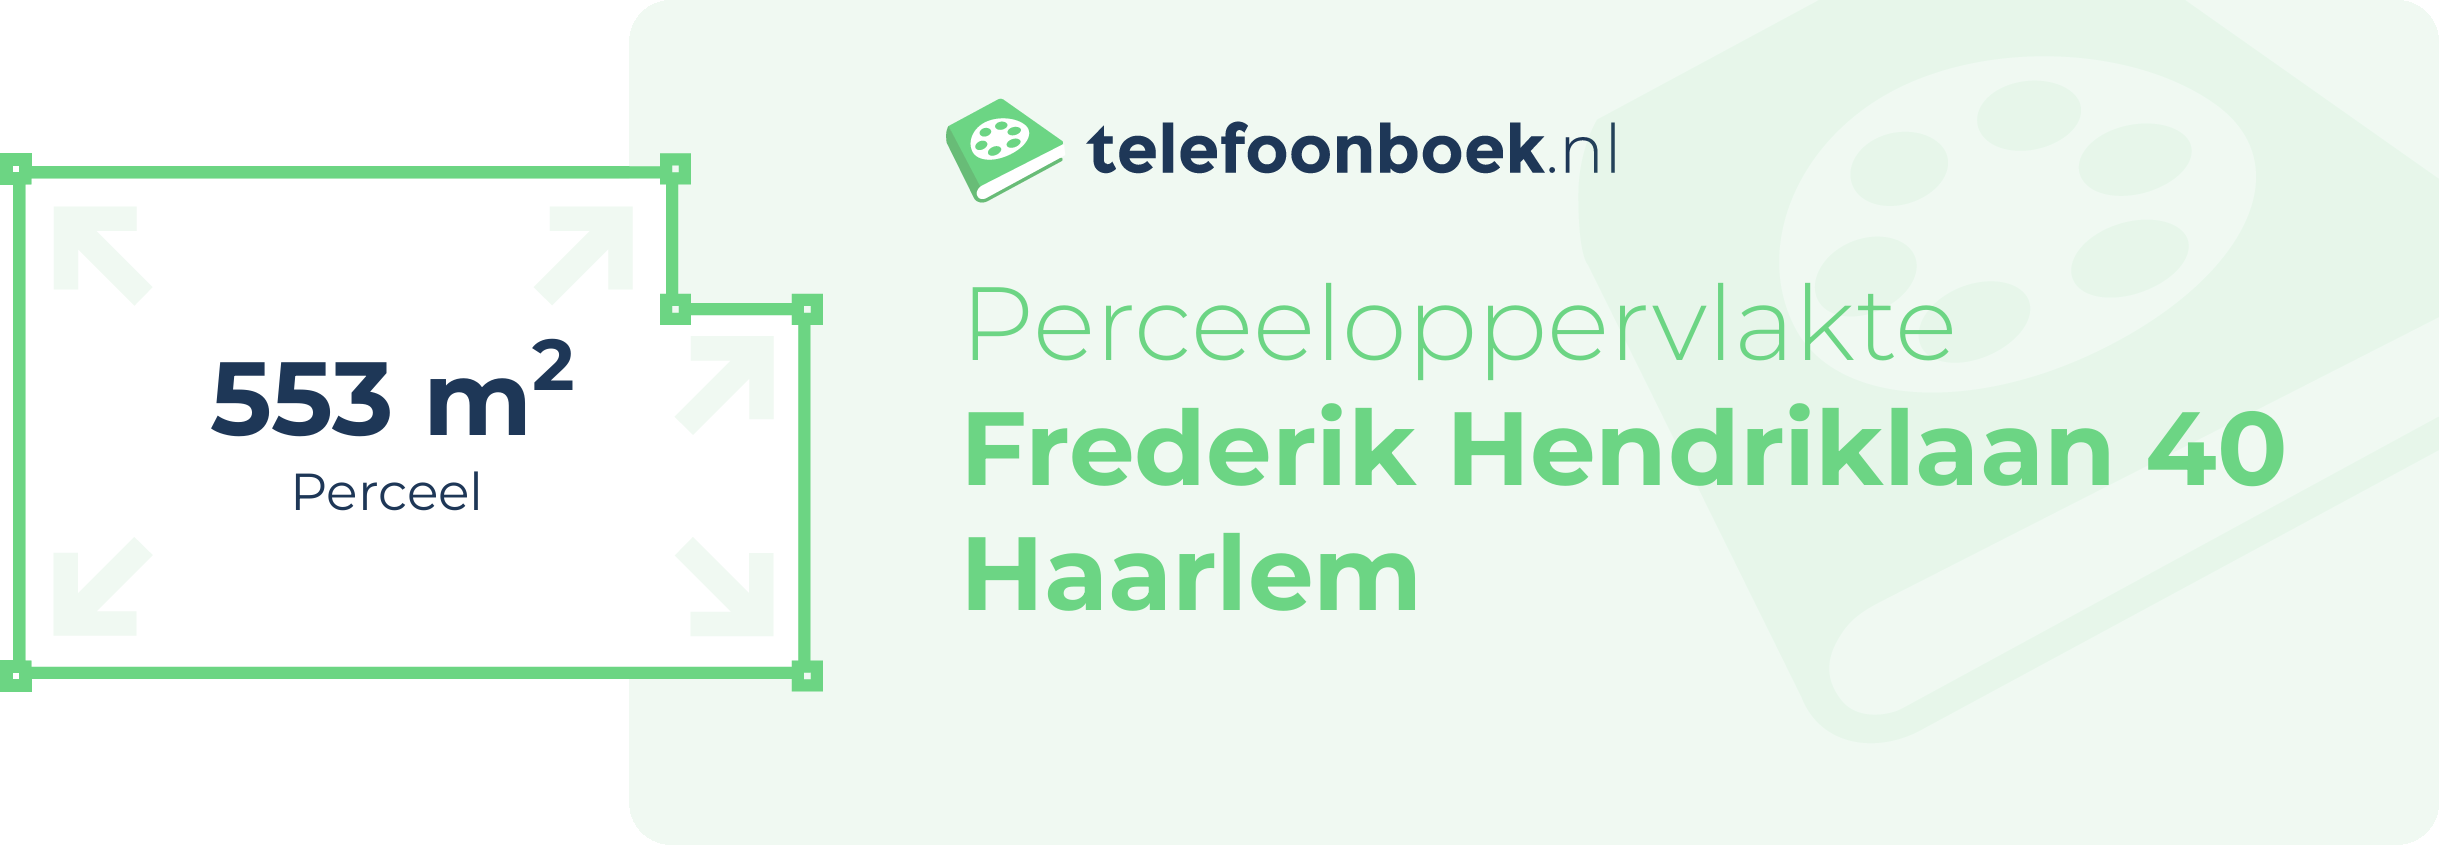 Perceeloppervlakte Frederik Hendriklaan 40 Haarlem